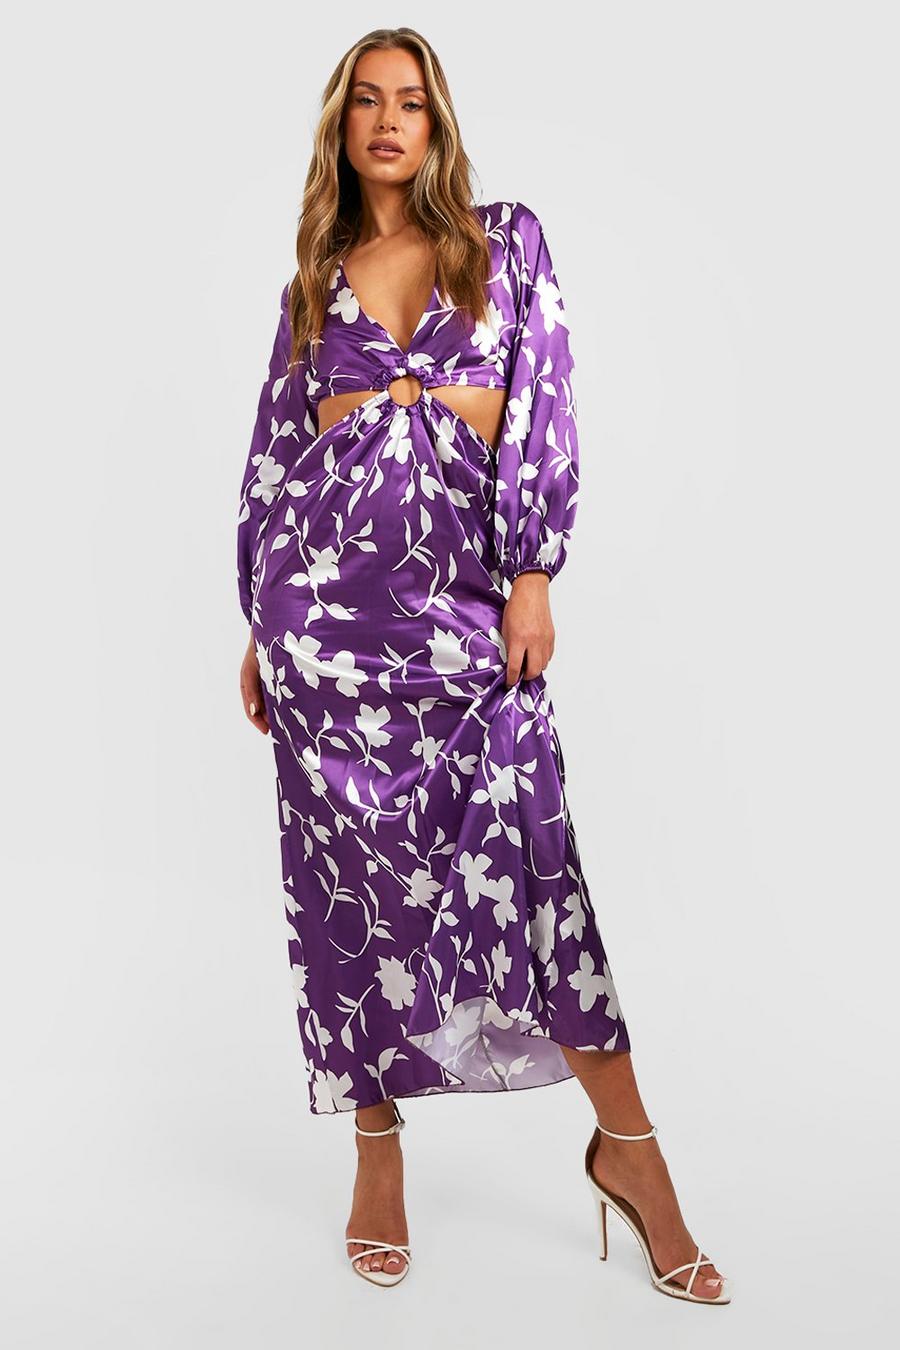 Jewel purple lila Floral Cut Out Maxi Dress